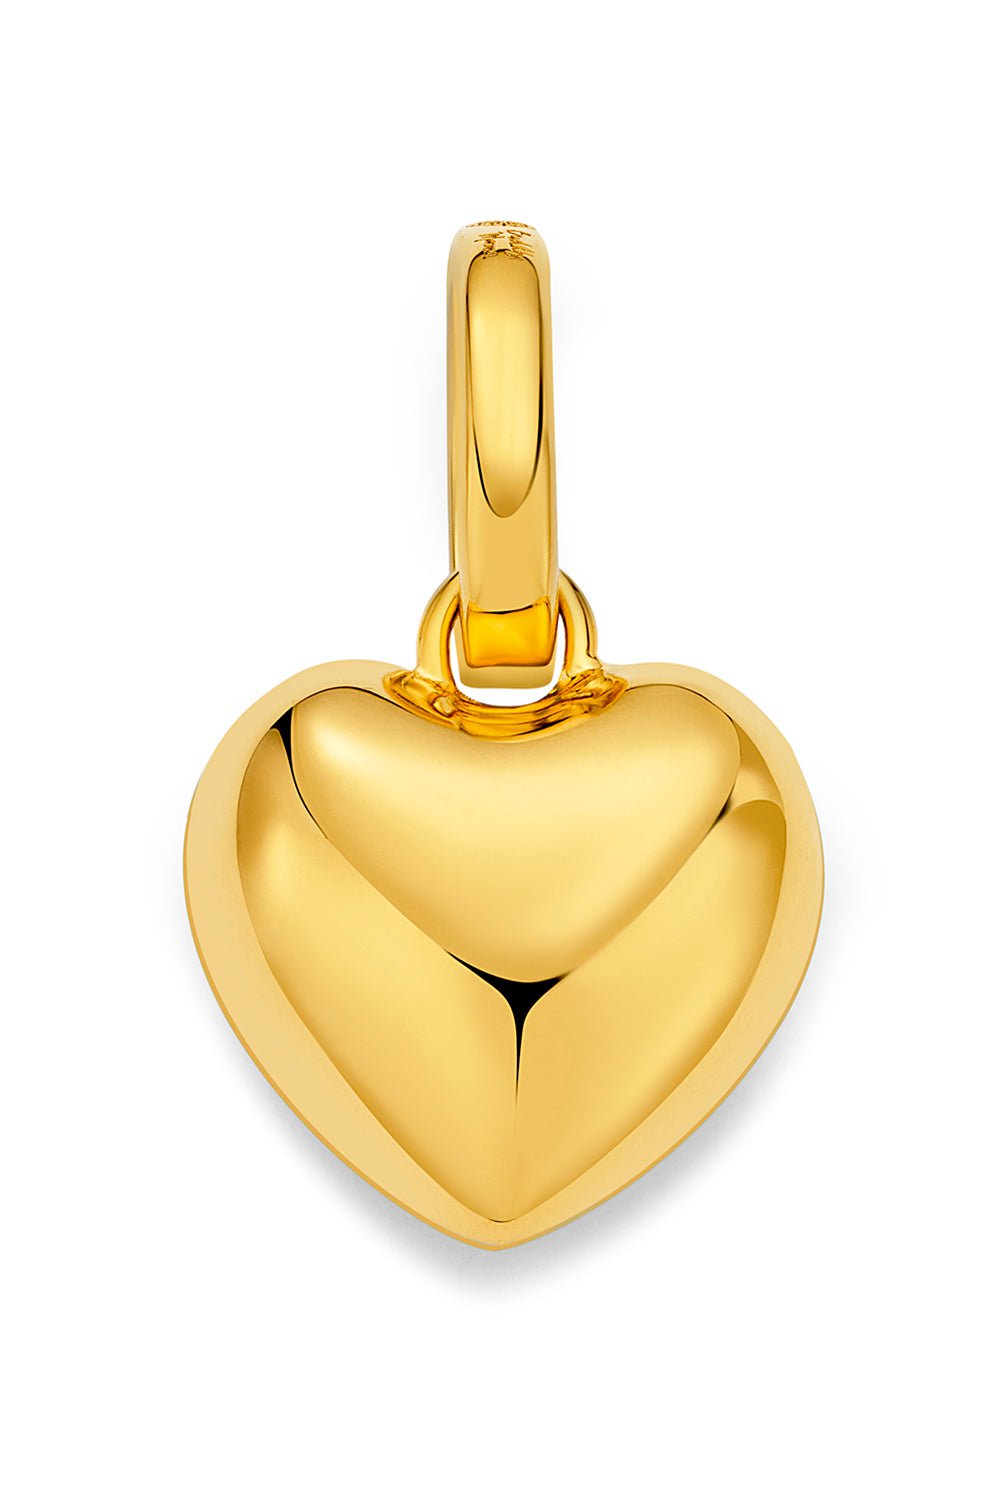 BUDDHA MAMA-Puffy Heart Pendant - Gold-YELLOW GOLD